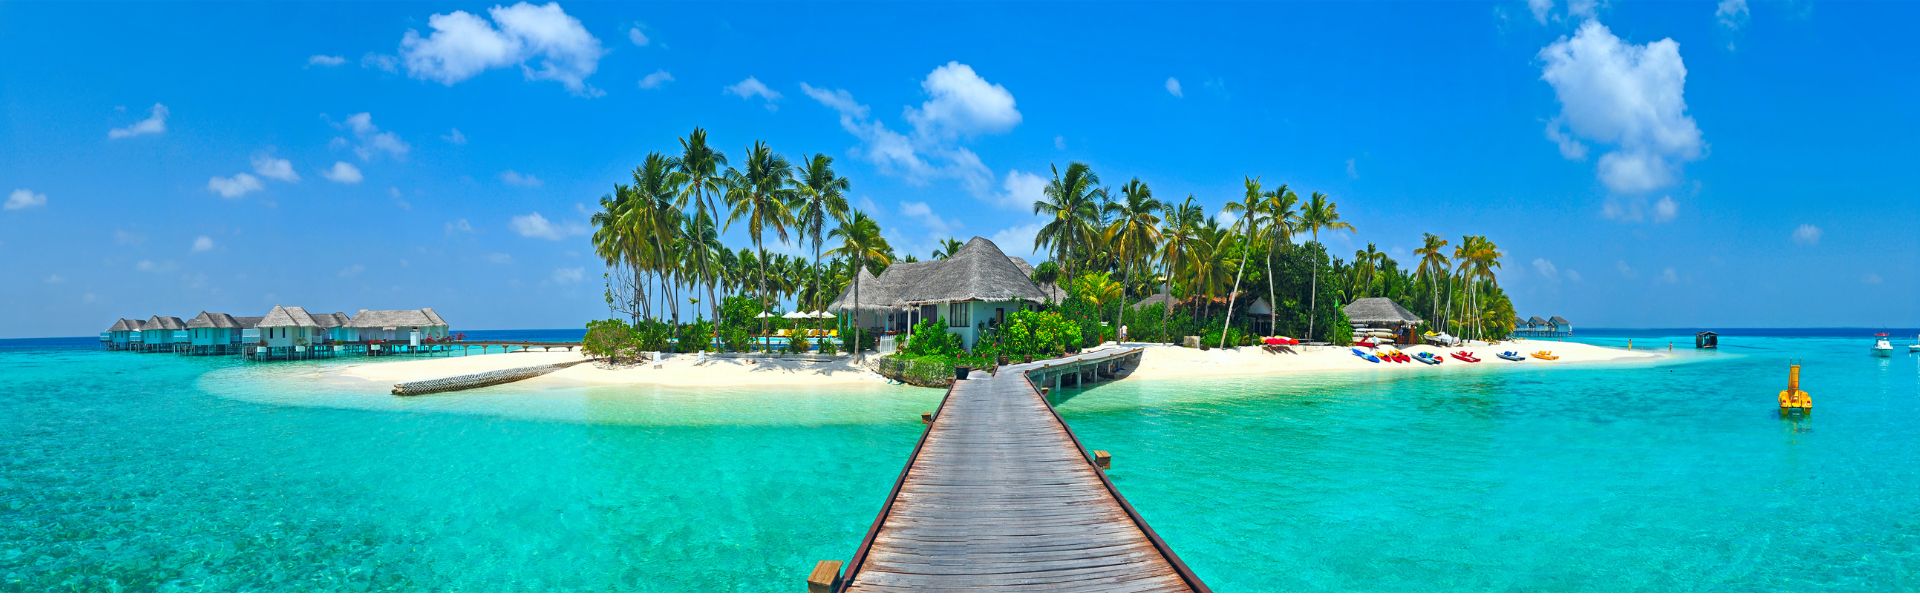 Kinh nghiệm du lịch Maldives tự túc - Thiên đường của những "giấc mơ biển"